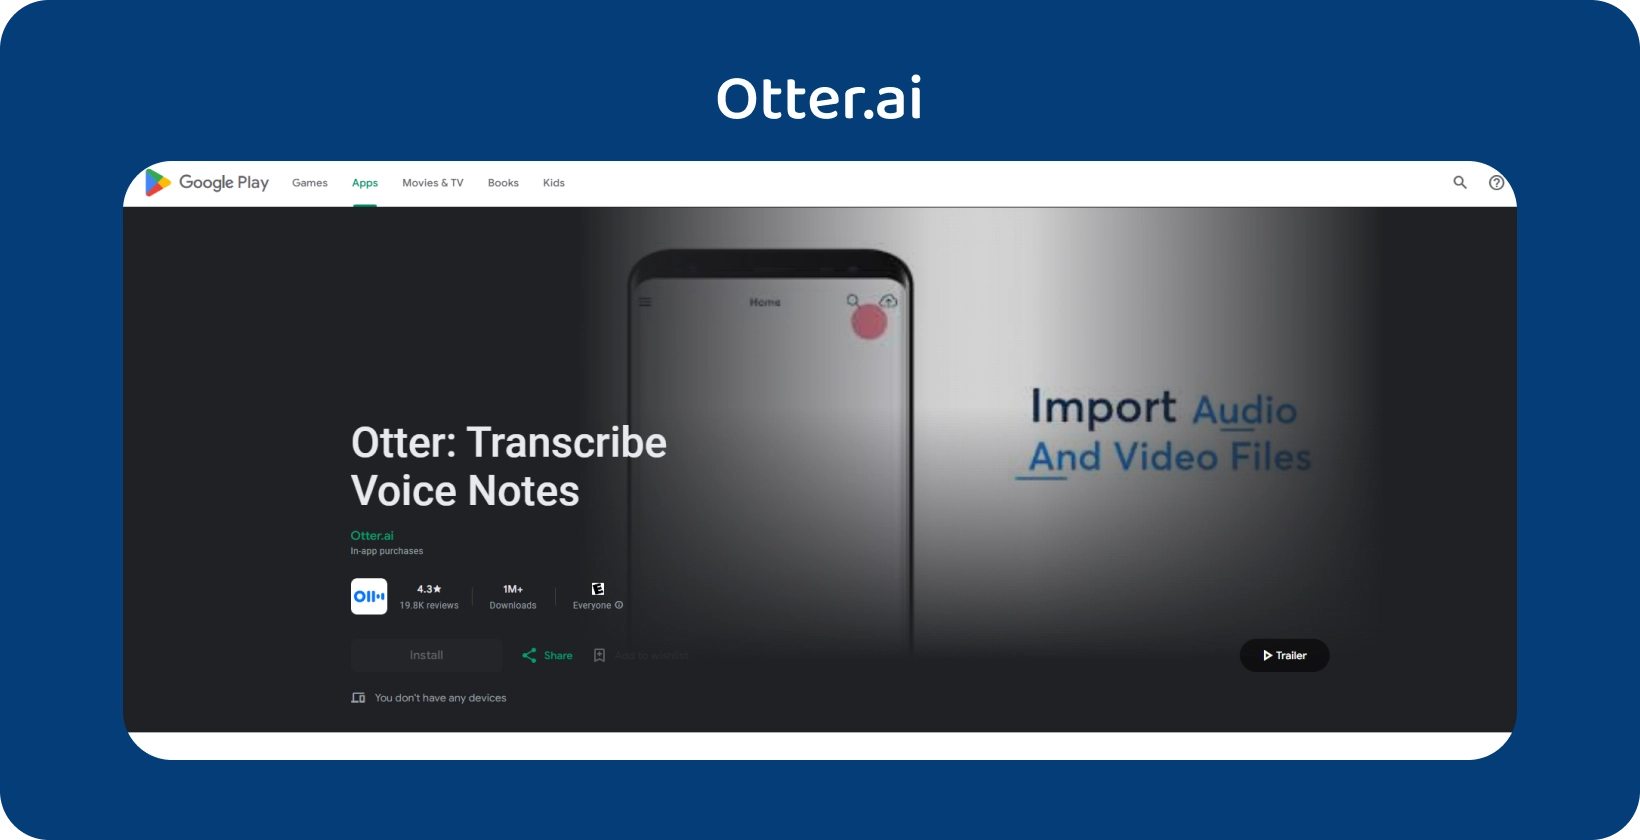 Otter.ai alkalmazás a Google Play-on, hangjegyzet-átírással és audio-/videofájl-importálási képességekkel.